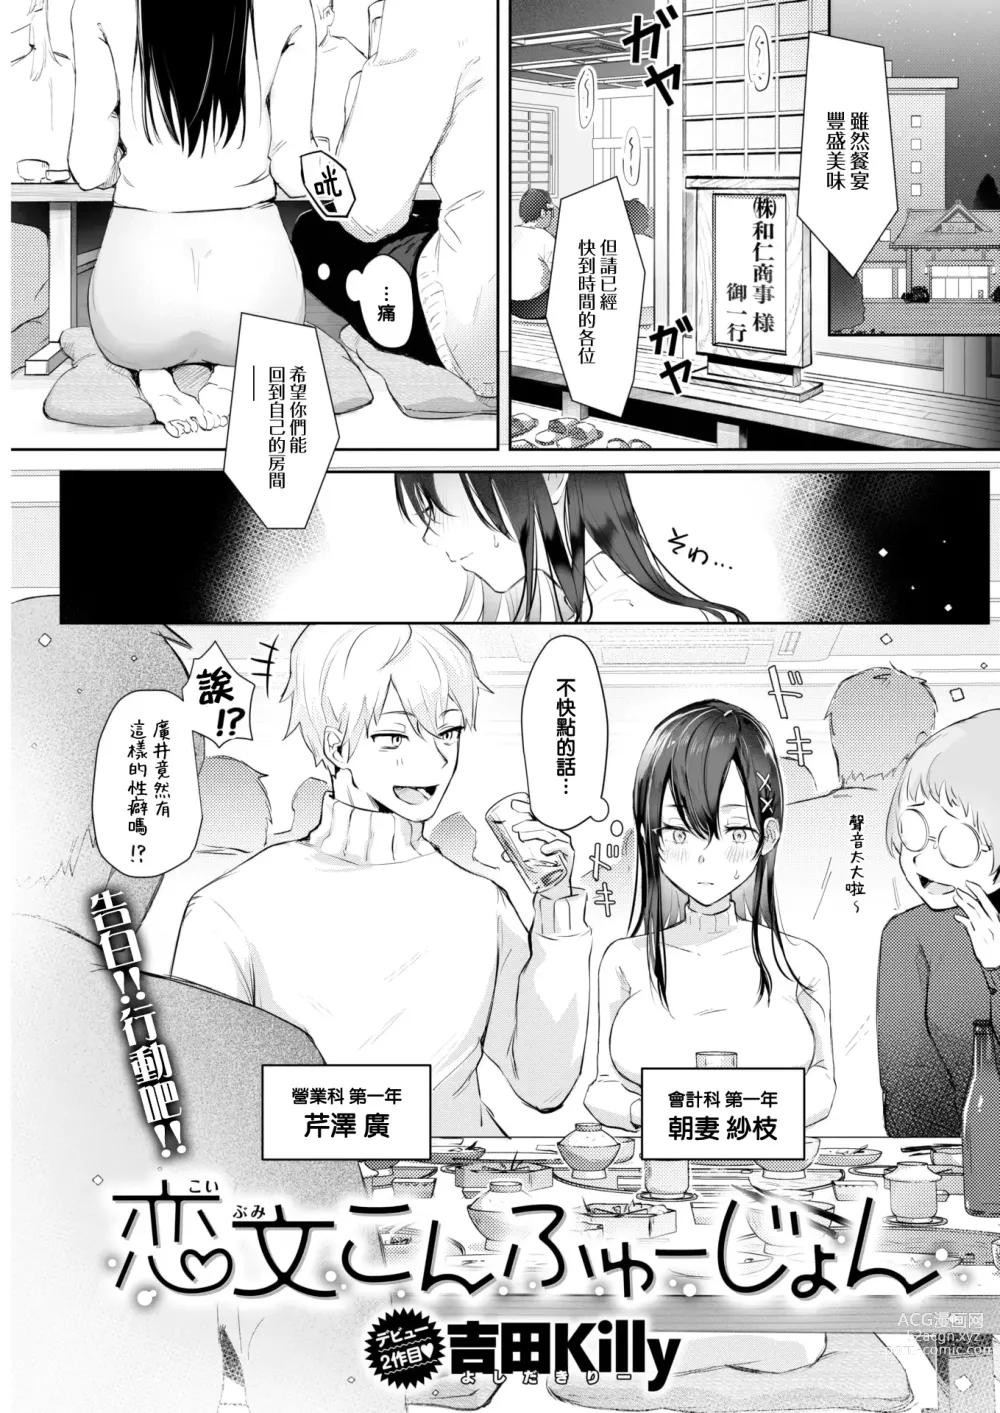 Page 2 of manga Koibumi Confusion